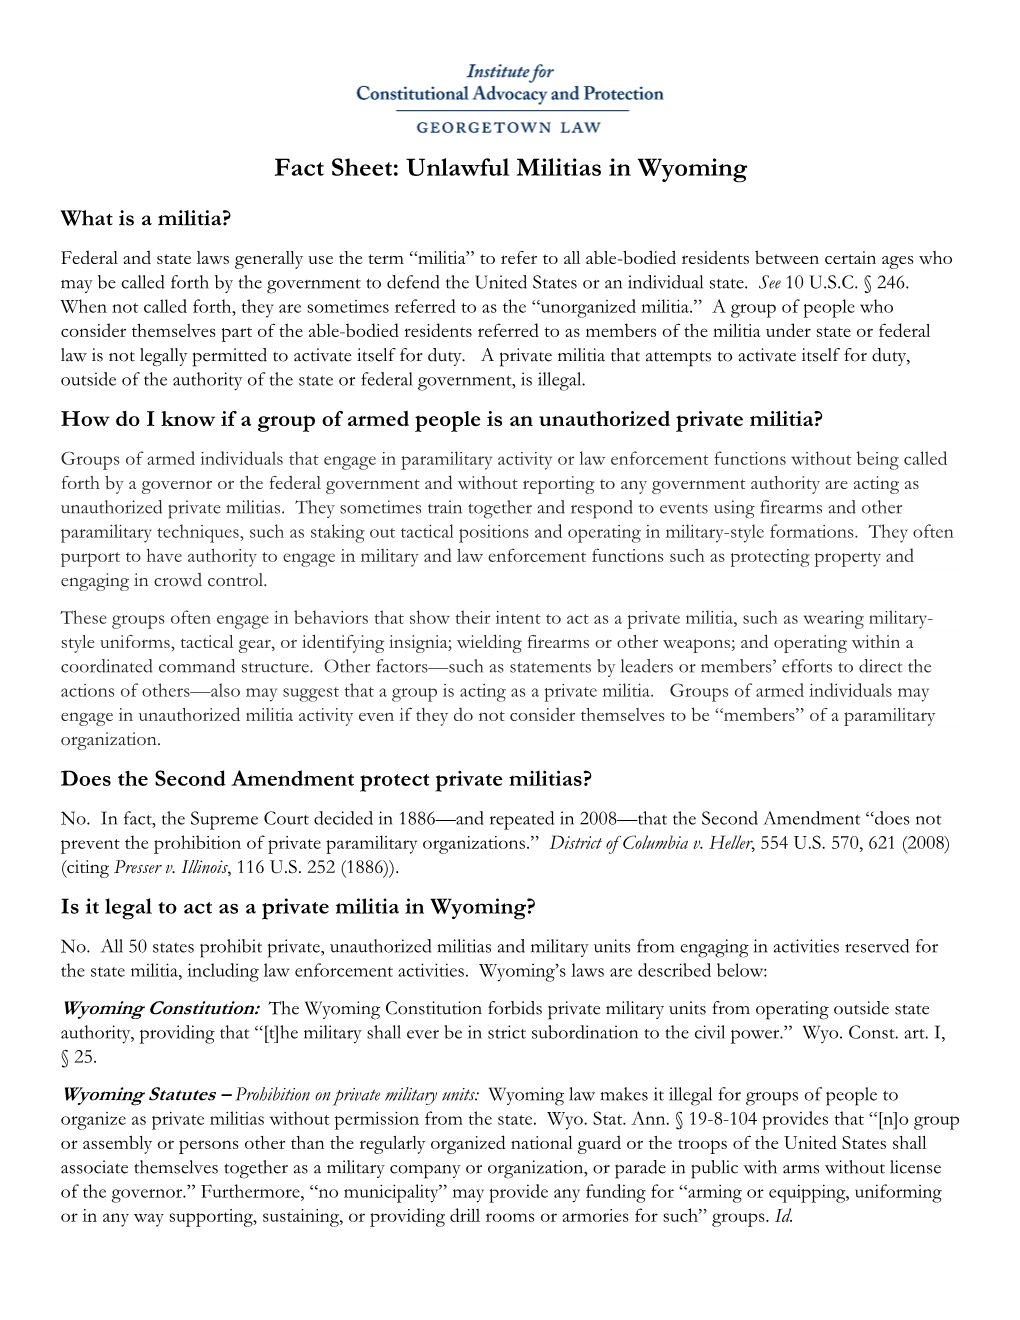 Unlawful Militias in Wyoming